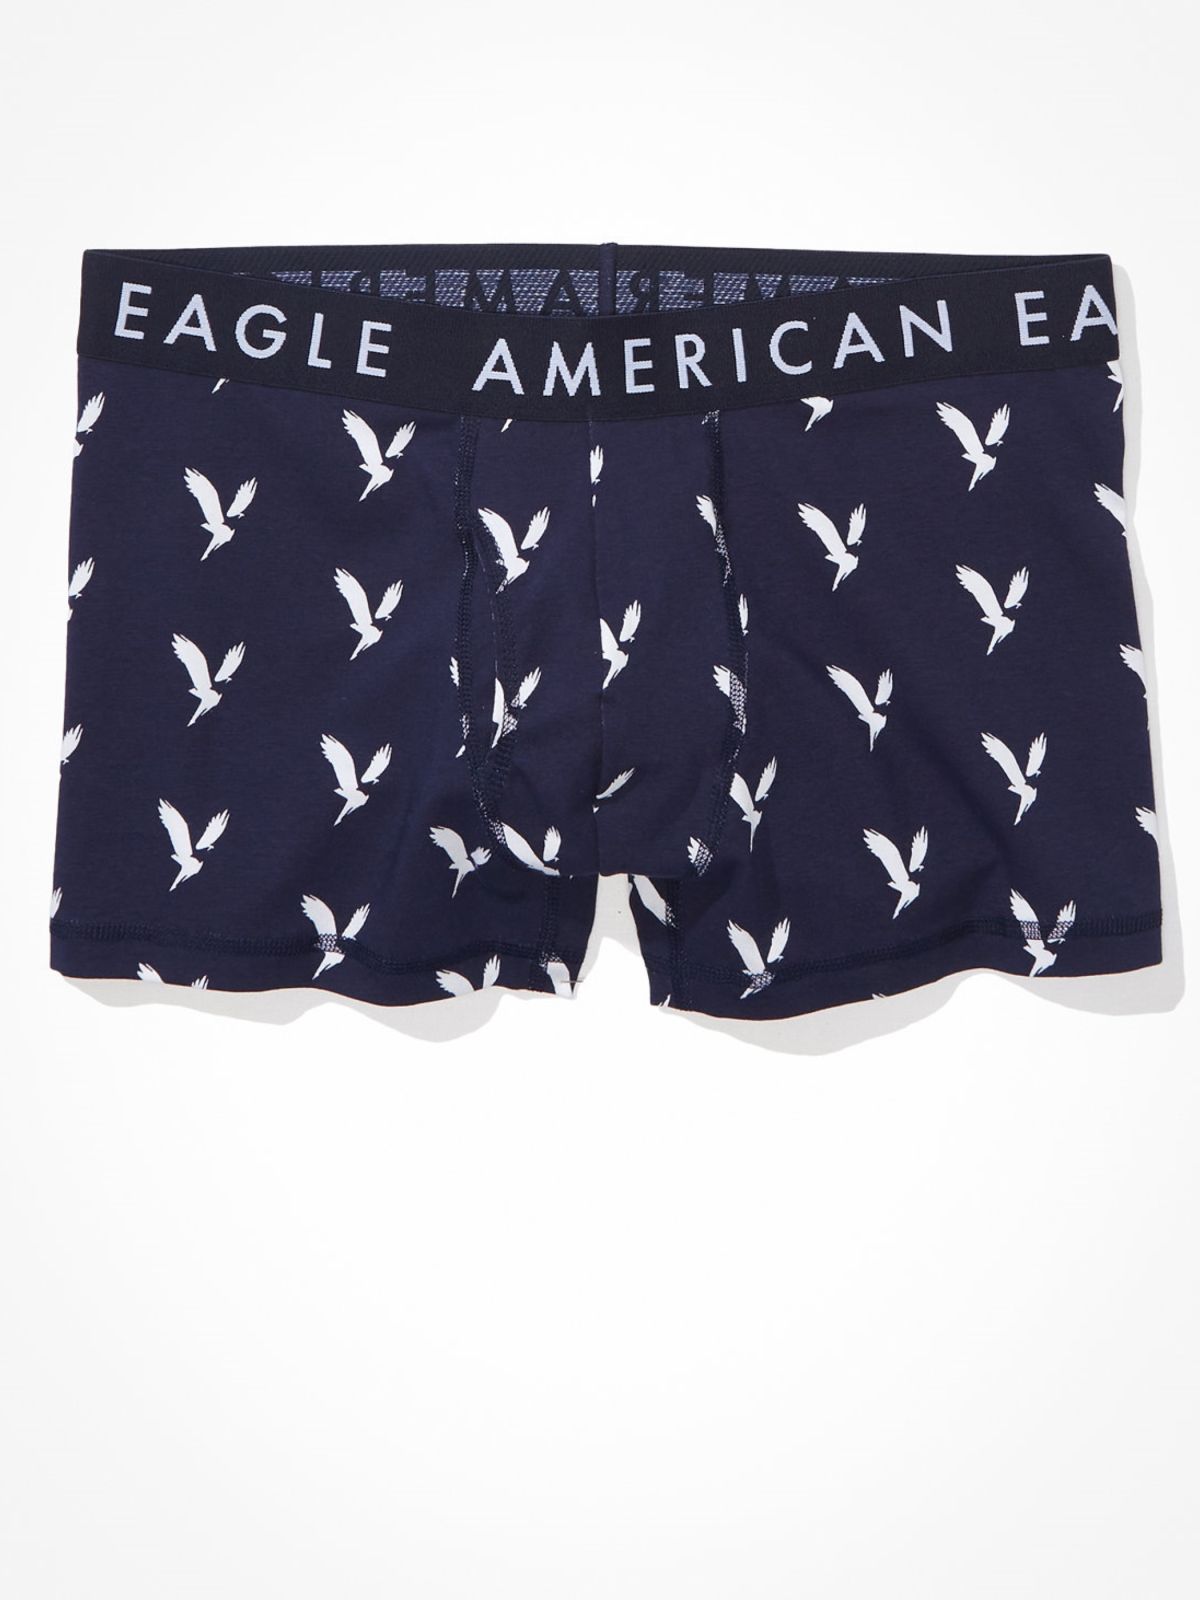  תחתוני בוקסר בהדפס לוגו של AMERICAN EAGLE